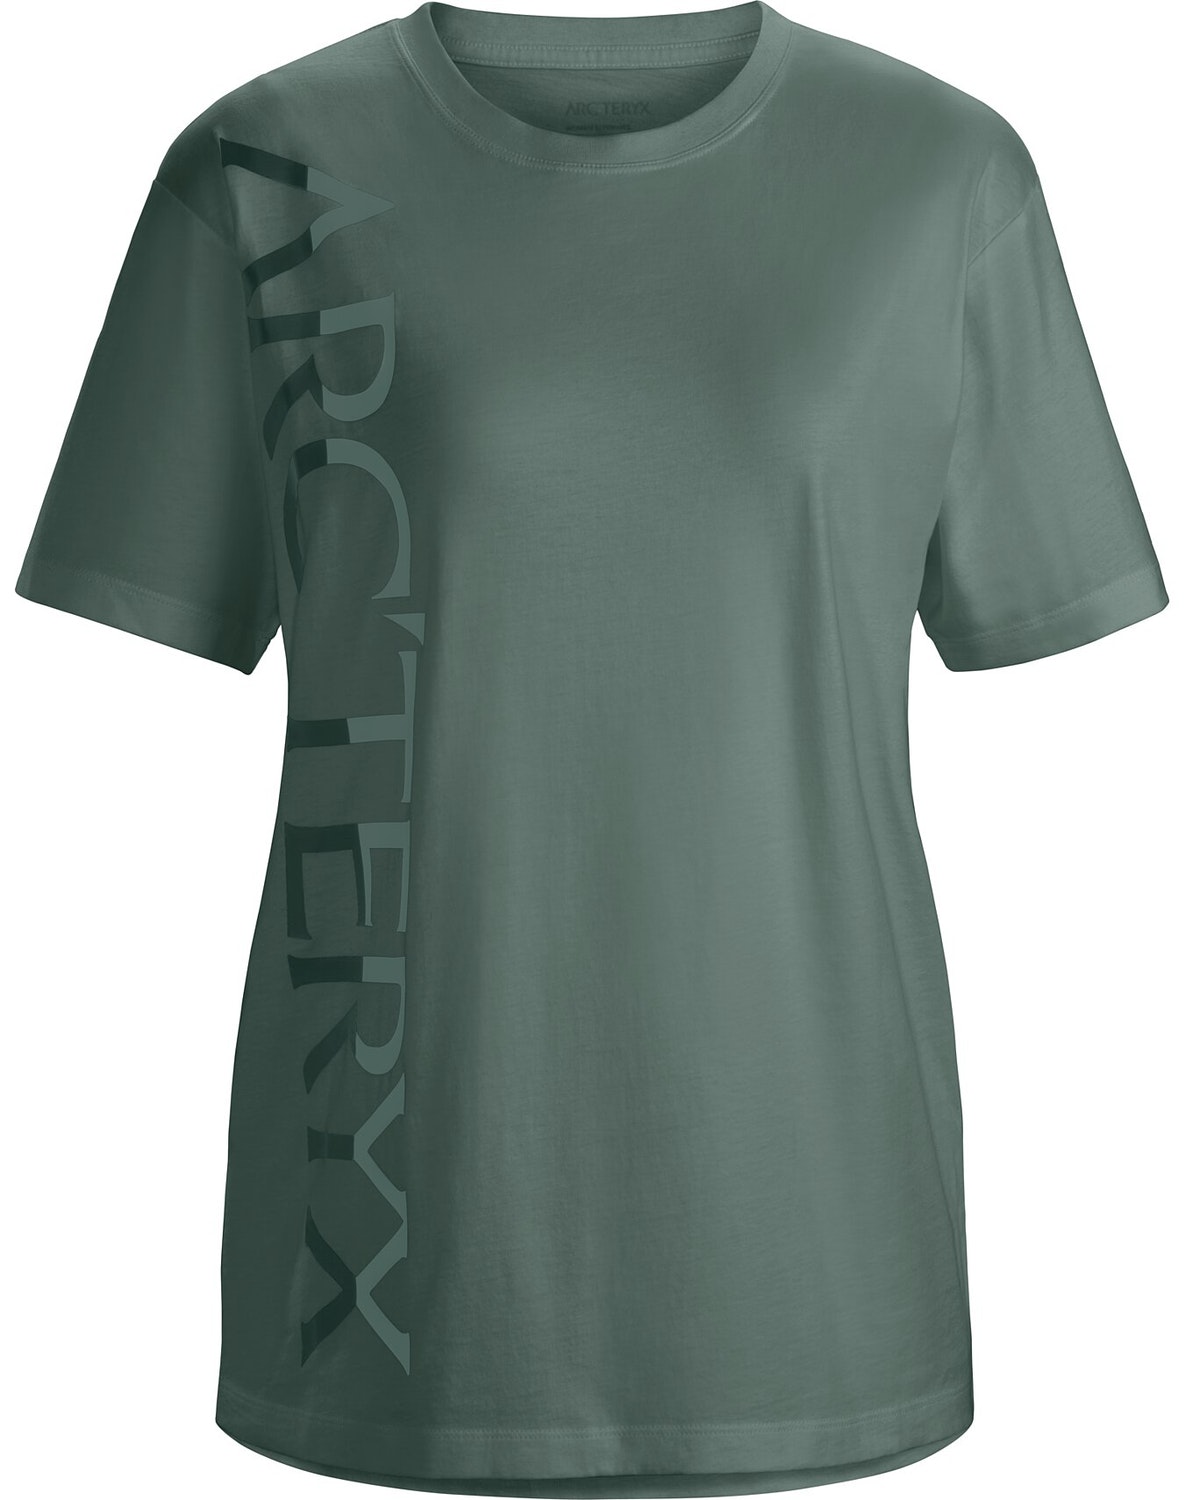 T-shirt Arc'teryx Downword Fade Donna Verdi Chiaro - IT-1457193